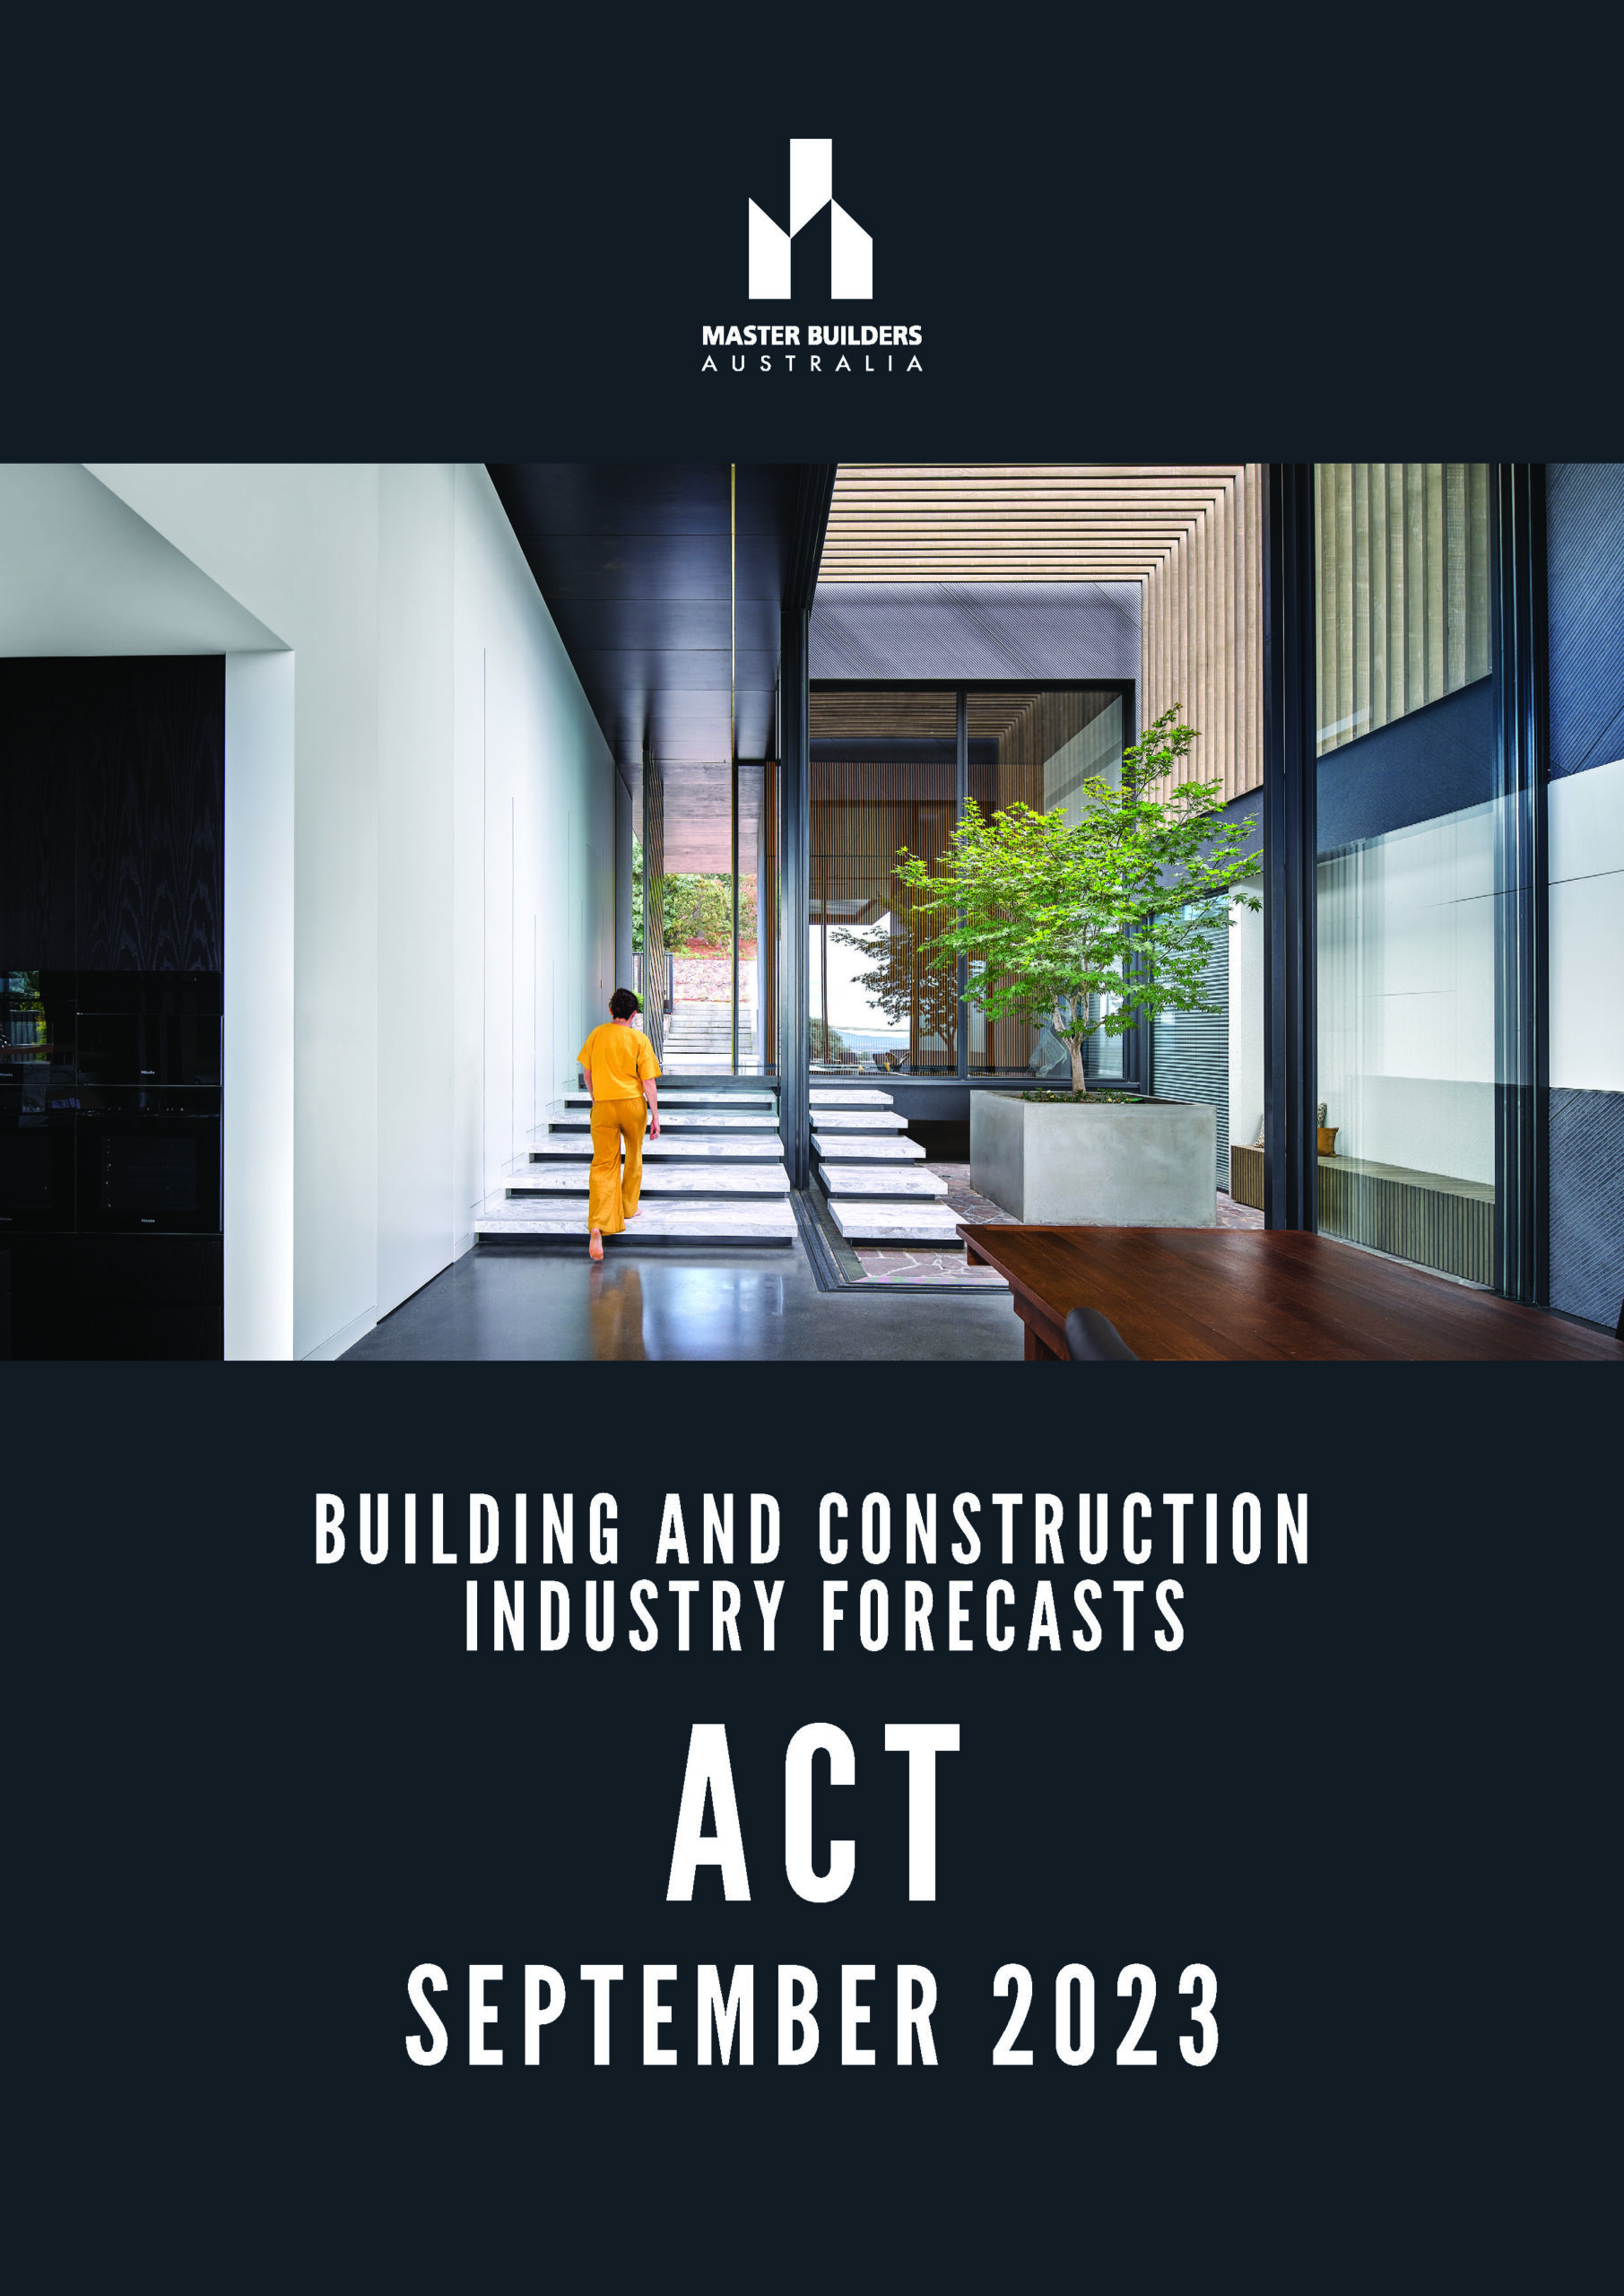 ACT Forecast September 2023